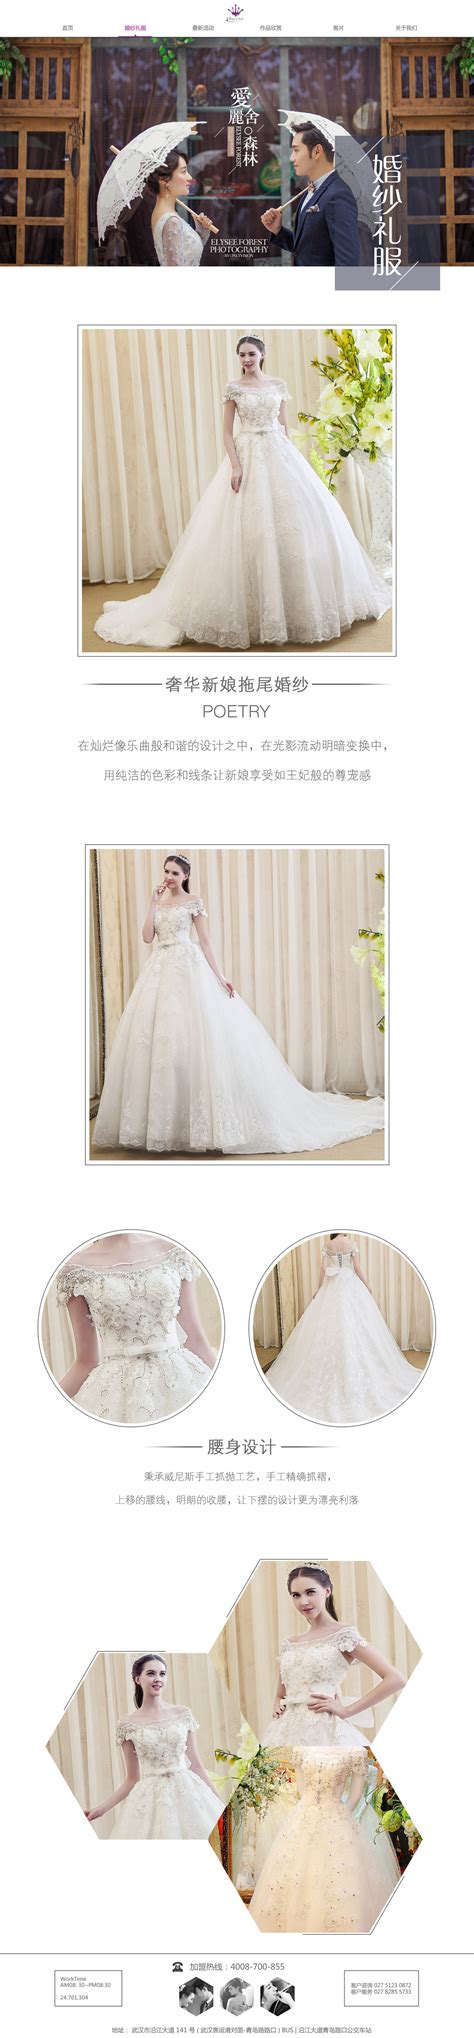 北京价格低的婚纱摄影网站推广